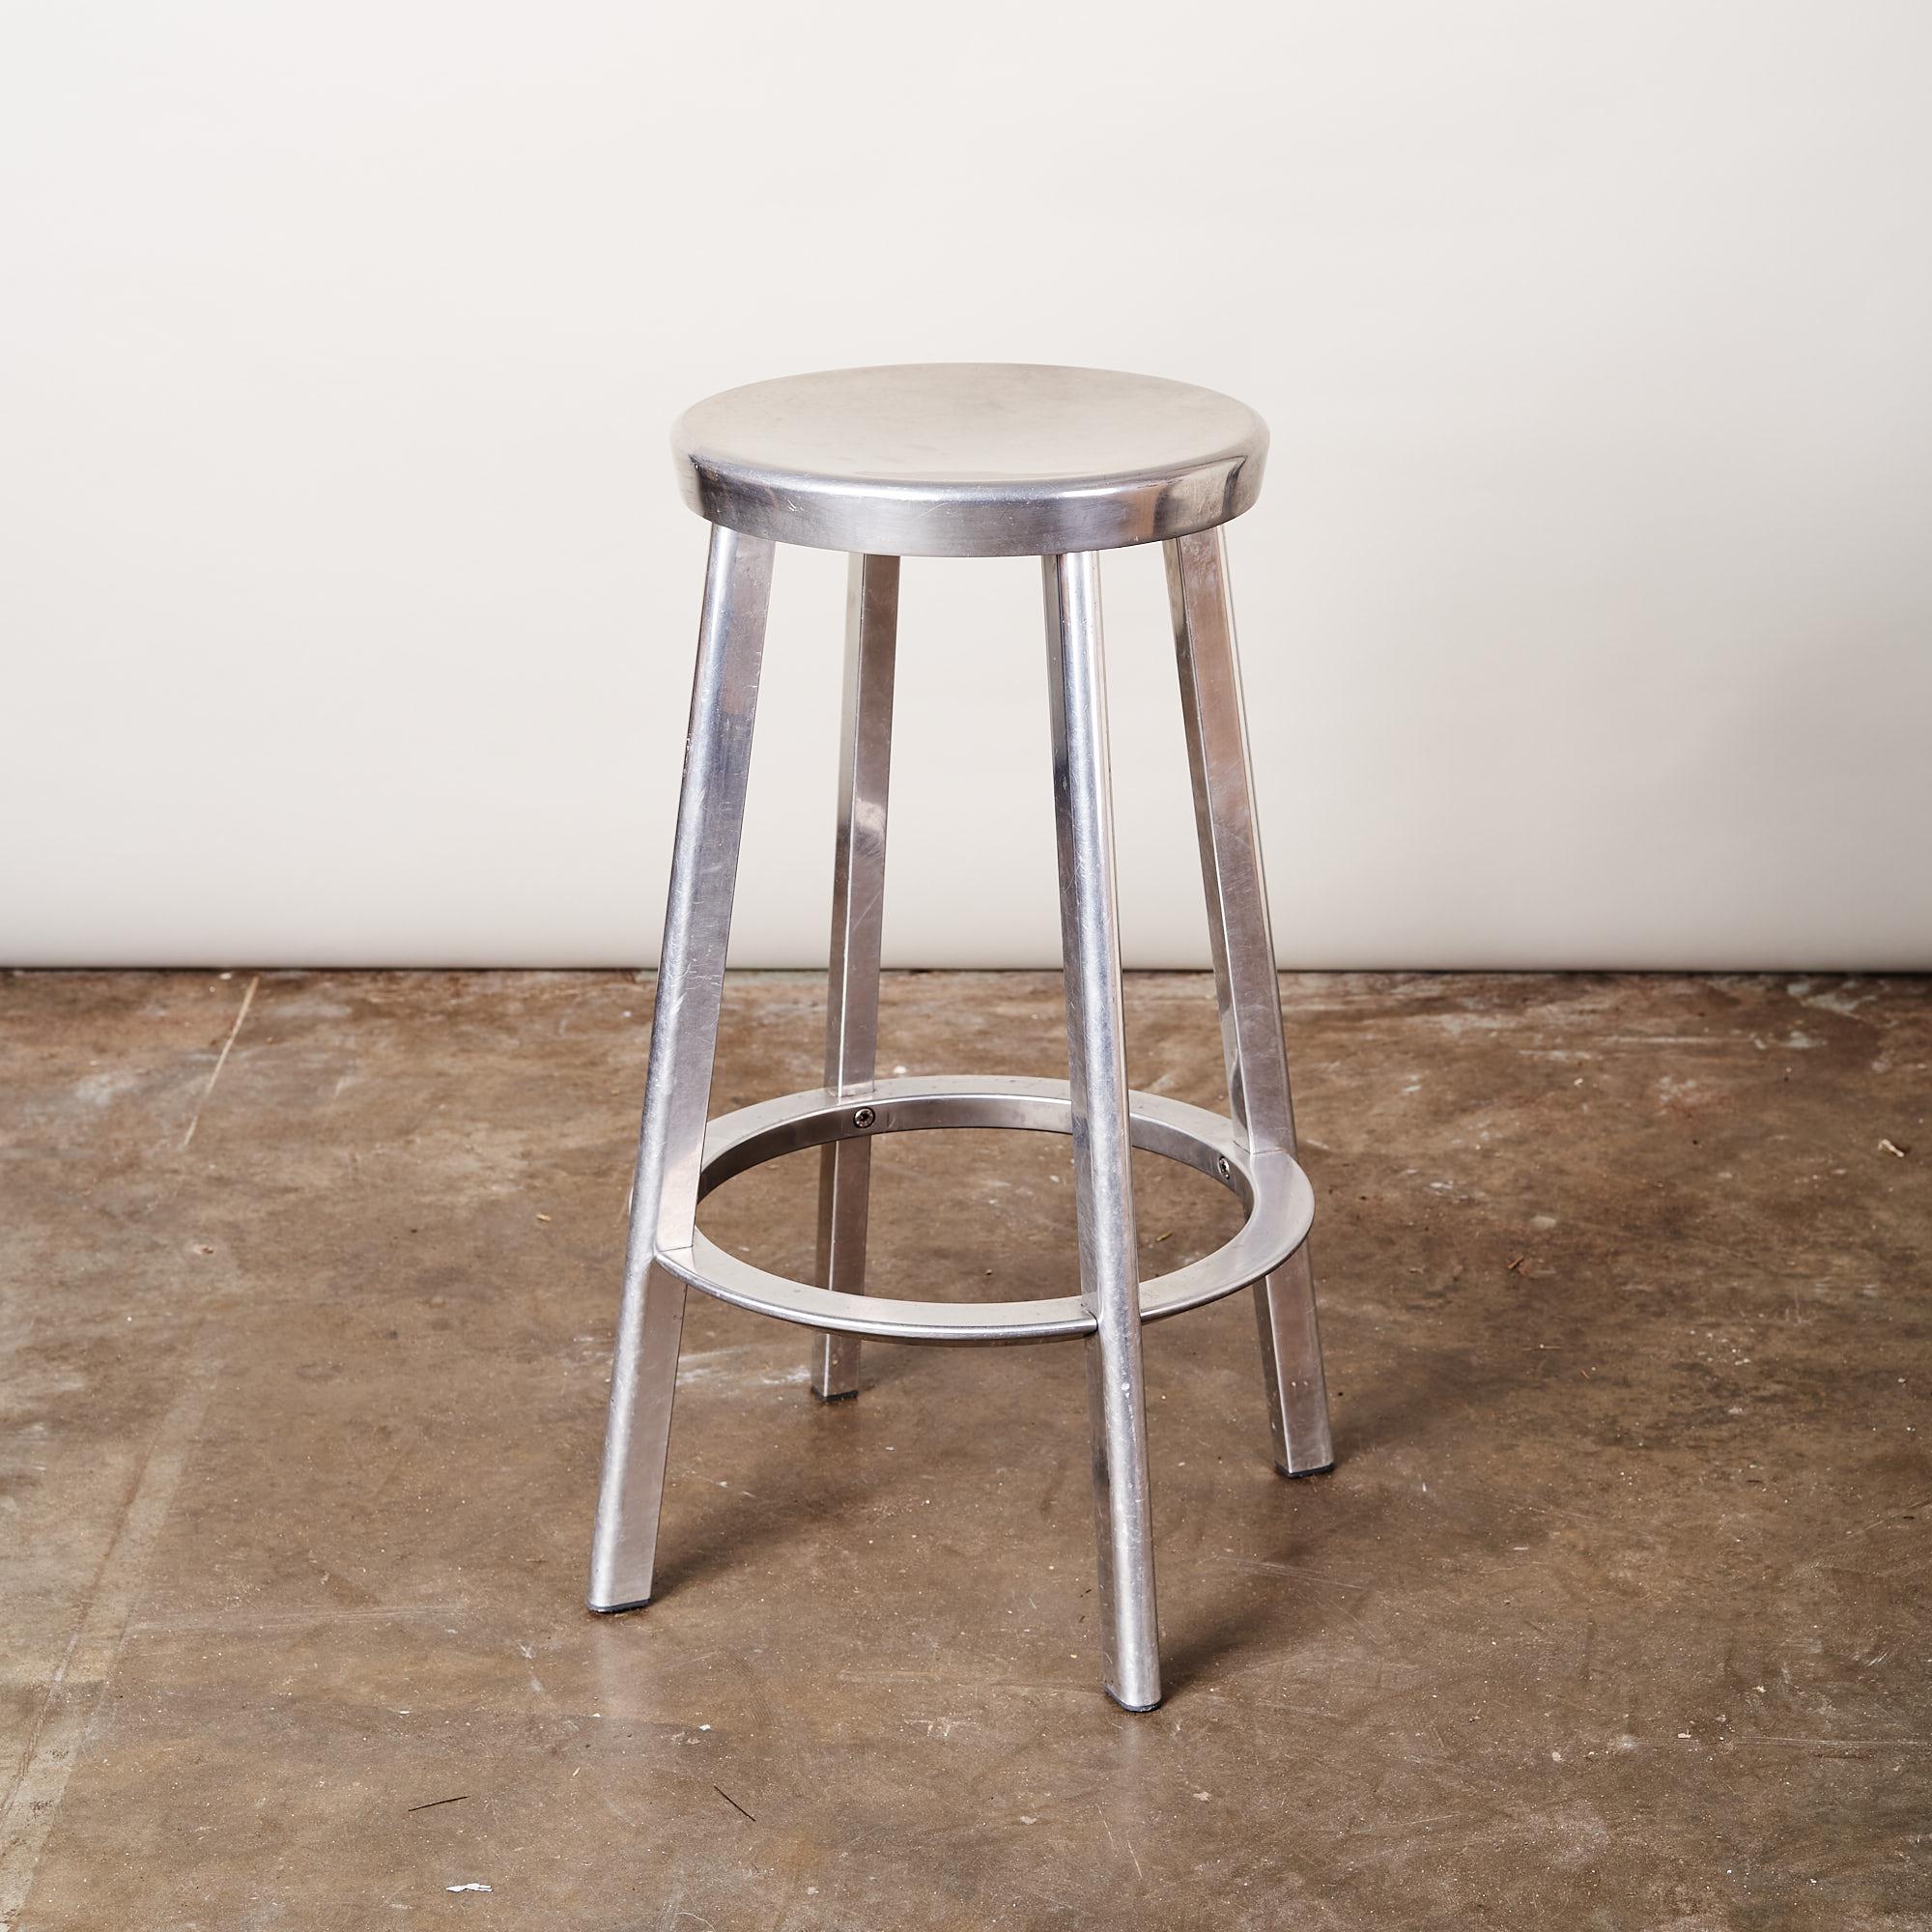 An Aluminium stool 'Deja-Vu' by Magis ex Tate Gallery, London.